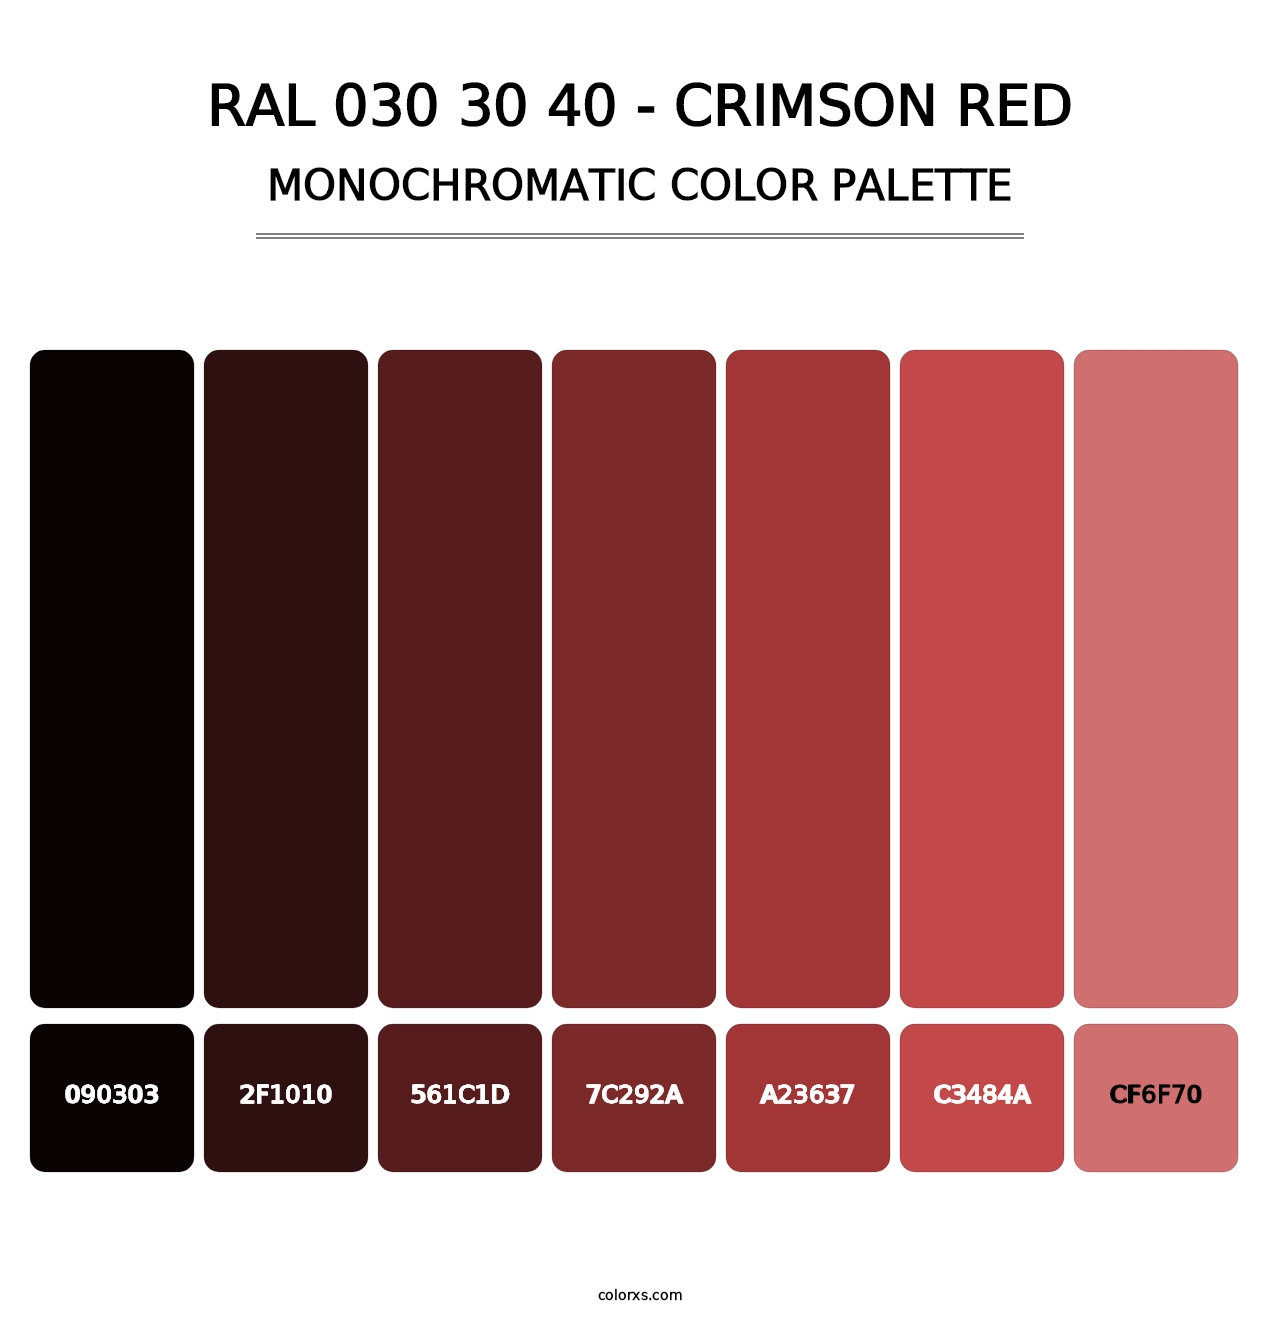 RAL 030 30 40 - Crimson Red - Monochromatic Color Palette